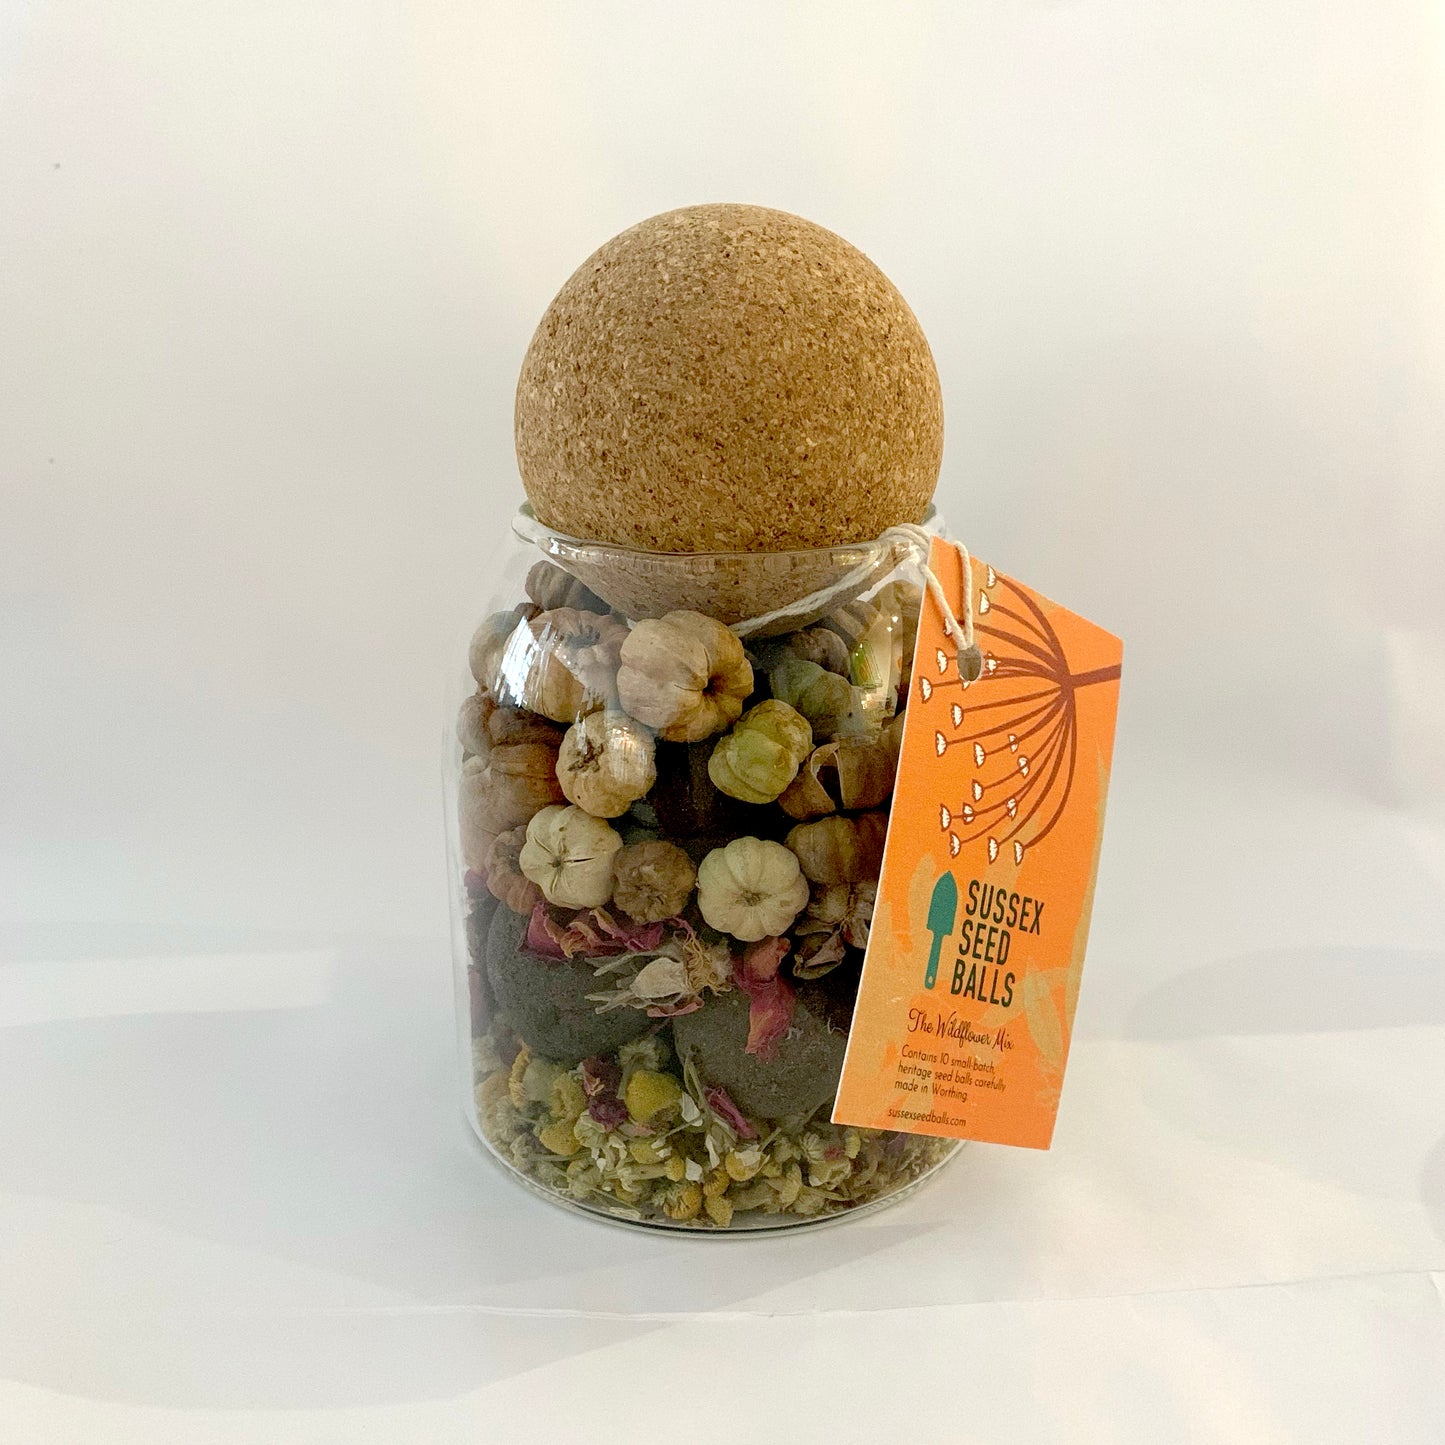 Sussex Seed Balls Original Wildflower Mix Jar